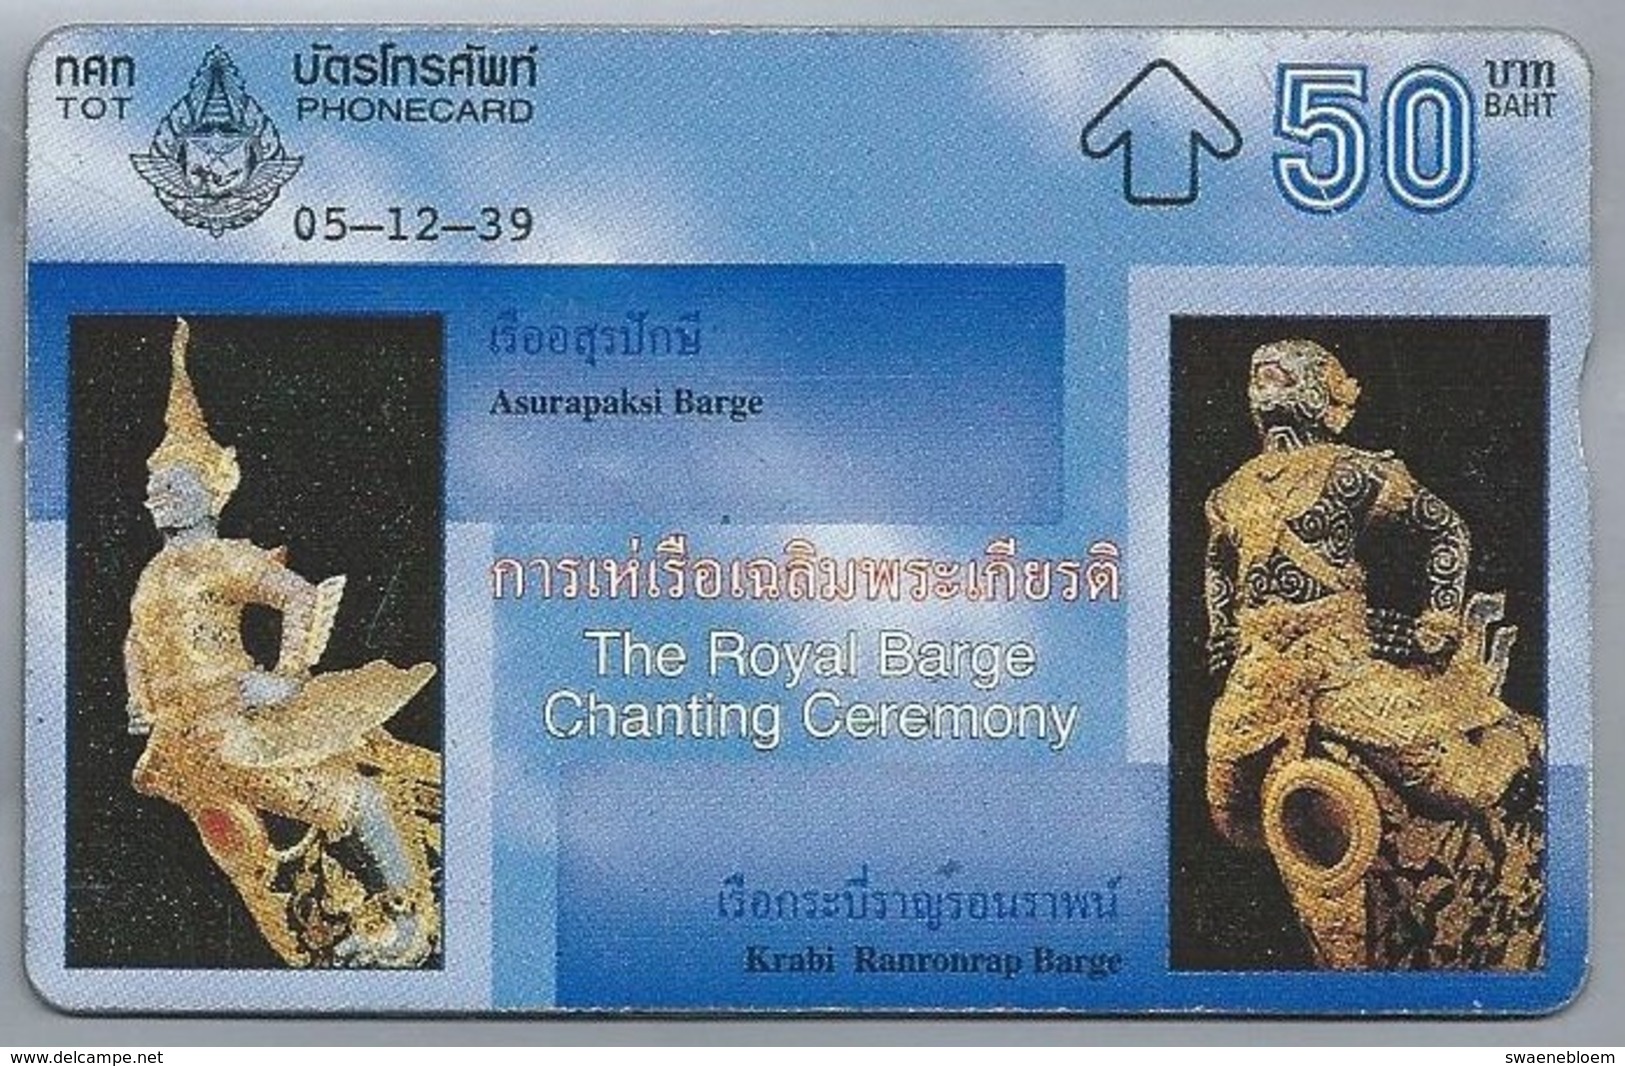 TH.- THAILAND. Phonecard. Asurapaksi Barge. Krabi Ranronrap Barge.  05-12-39. The Royal Barge Chanting Ceremony. 2 Scans - Tailandia